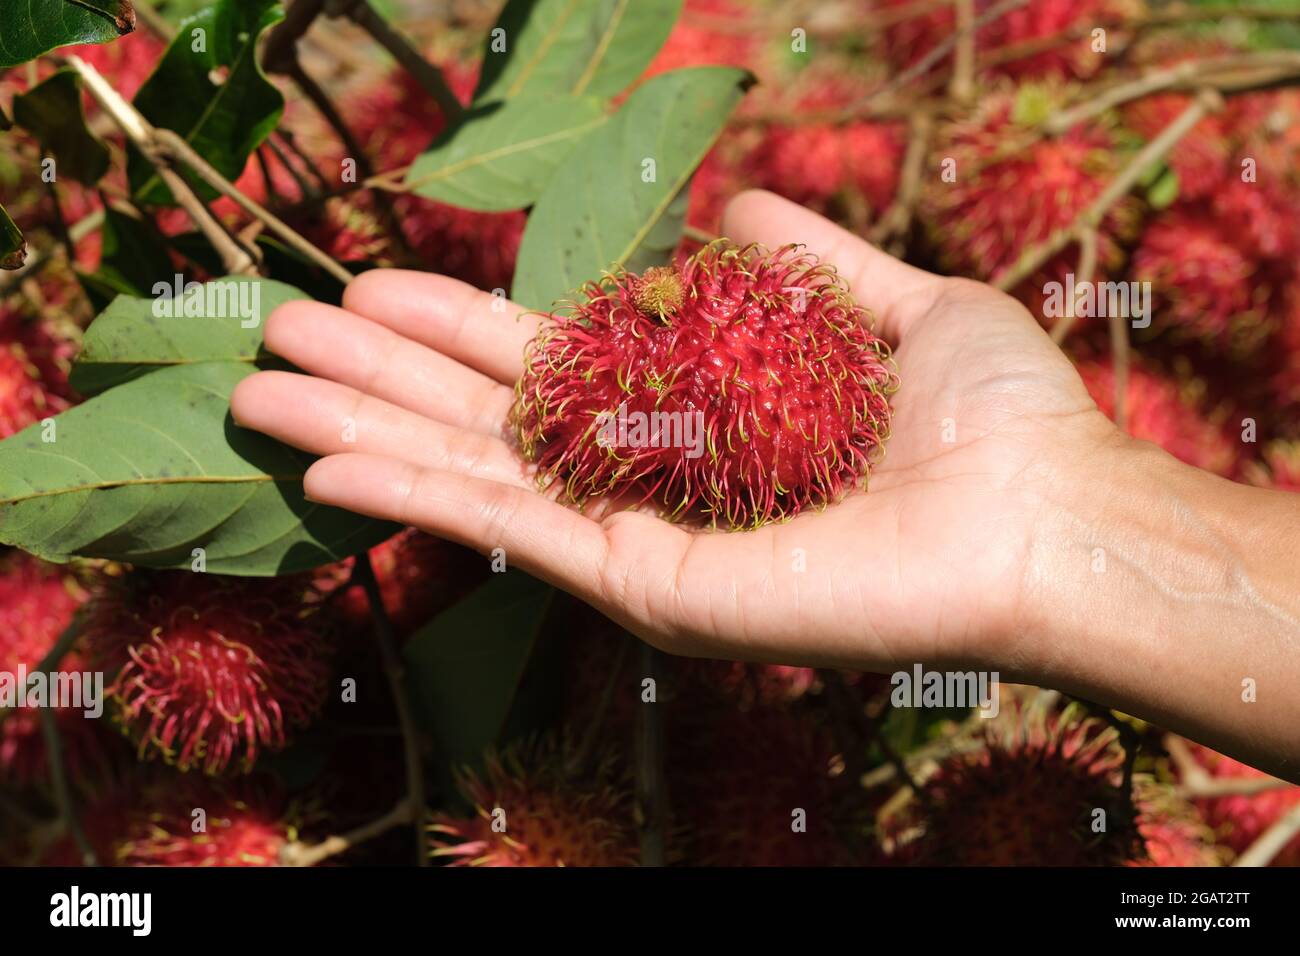 Indonesia Batam - Rambutan fruits - Nephelium lappaceum Stock Photo